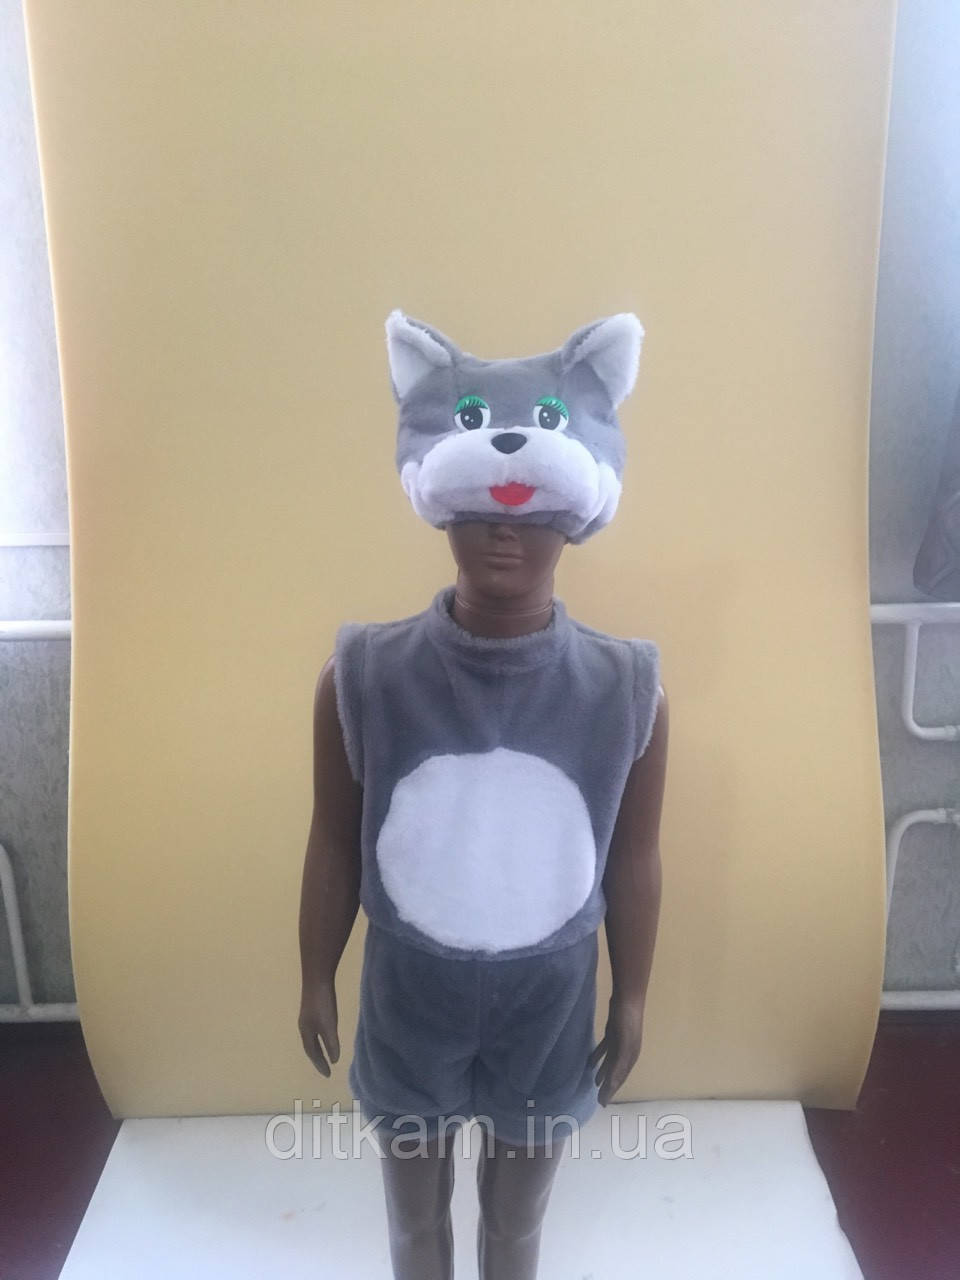 Дитячий карнавальний костюм Кота 3-5 років